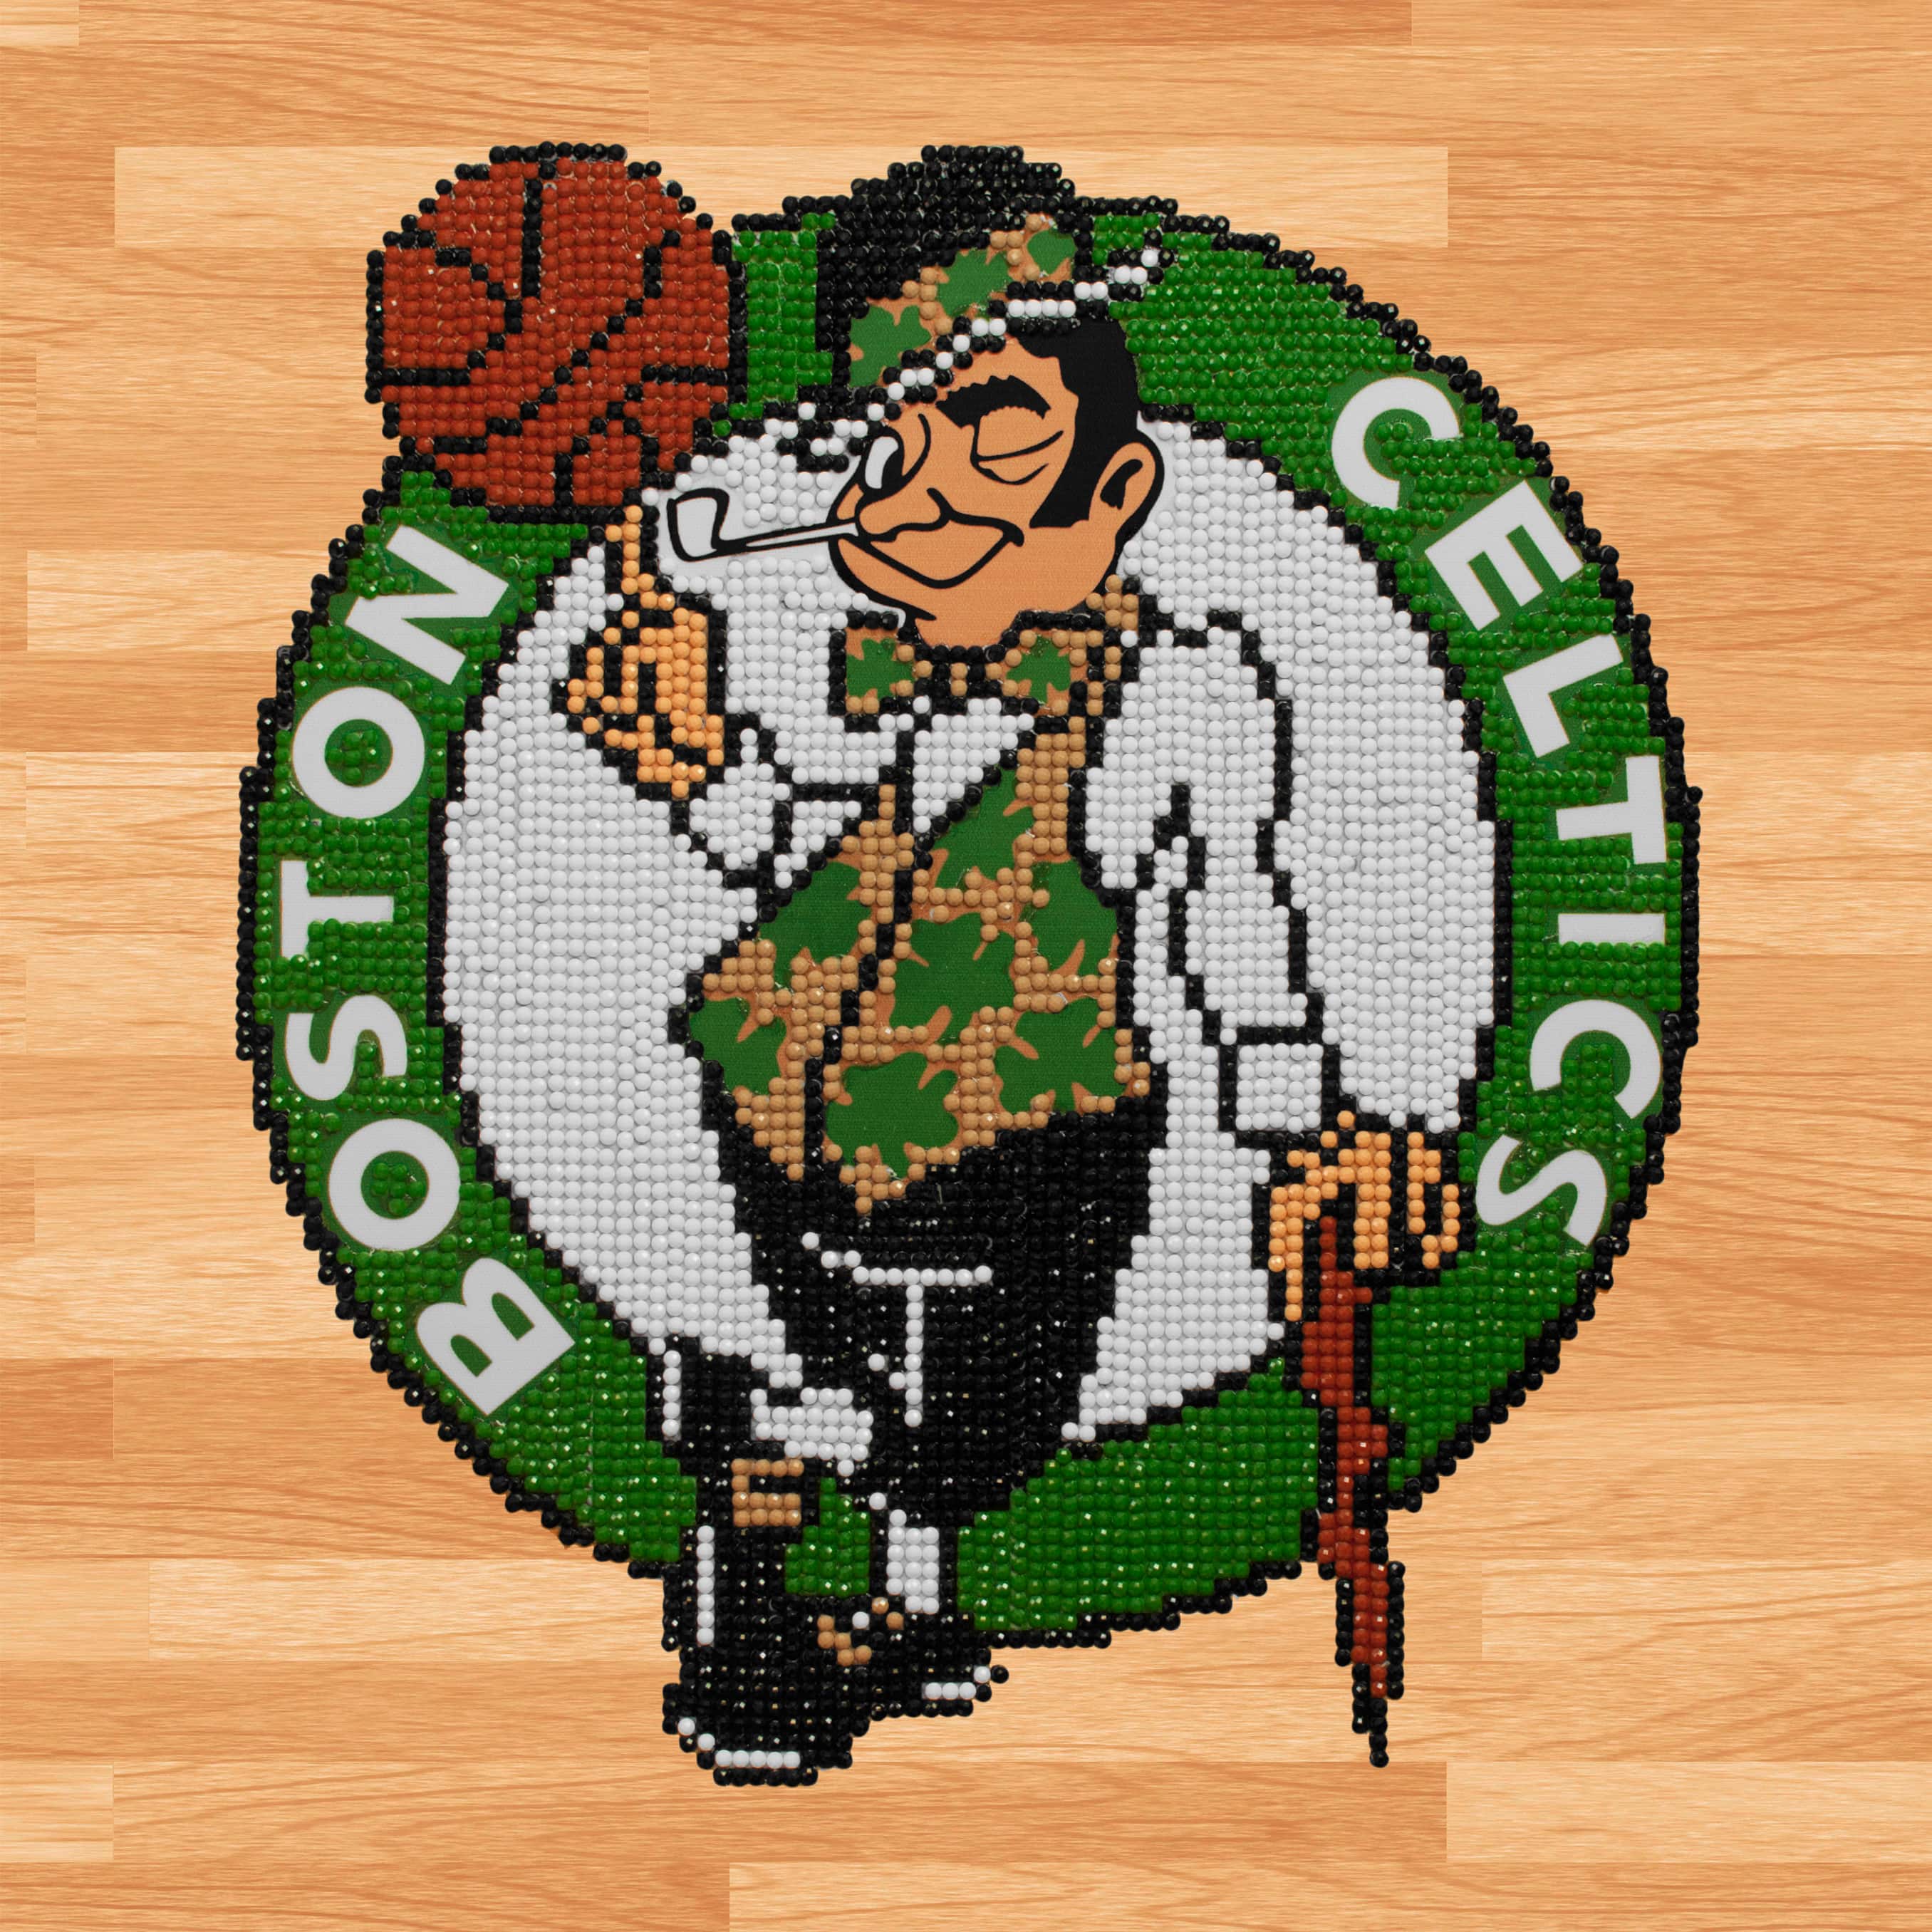 Boston Celtics NBA Official Licensed Merchandise — Maison Sport Canadien /